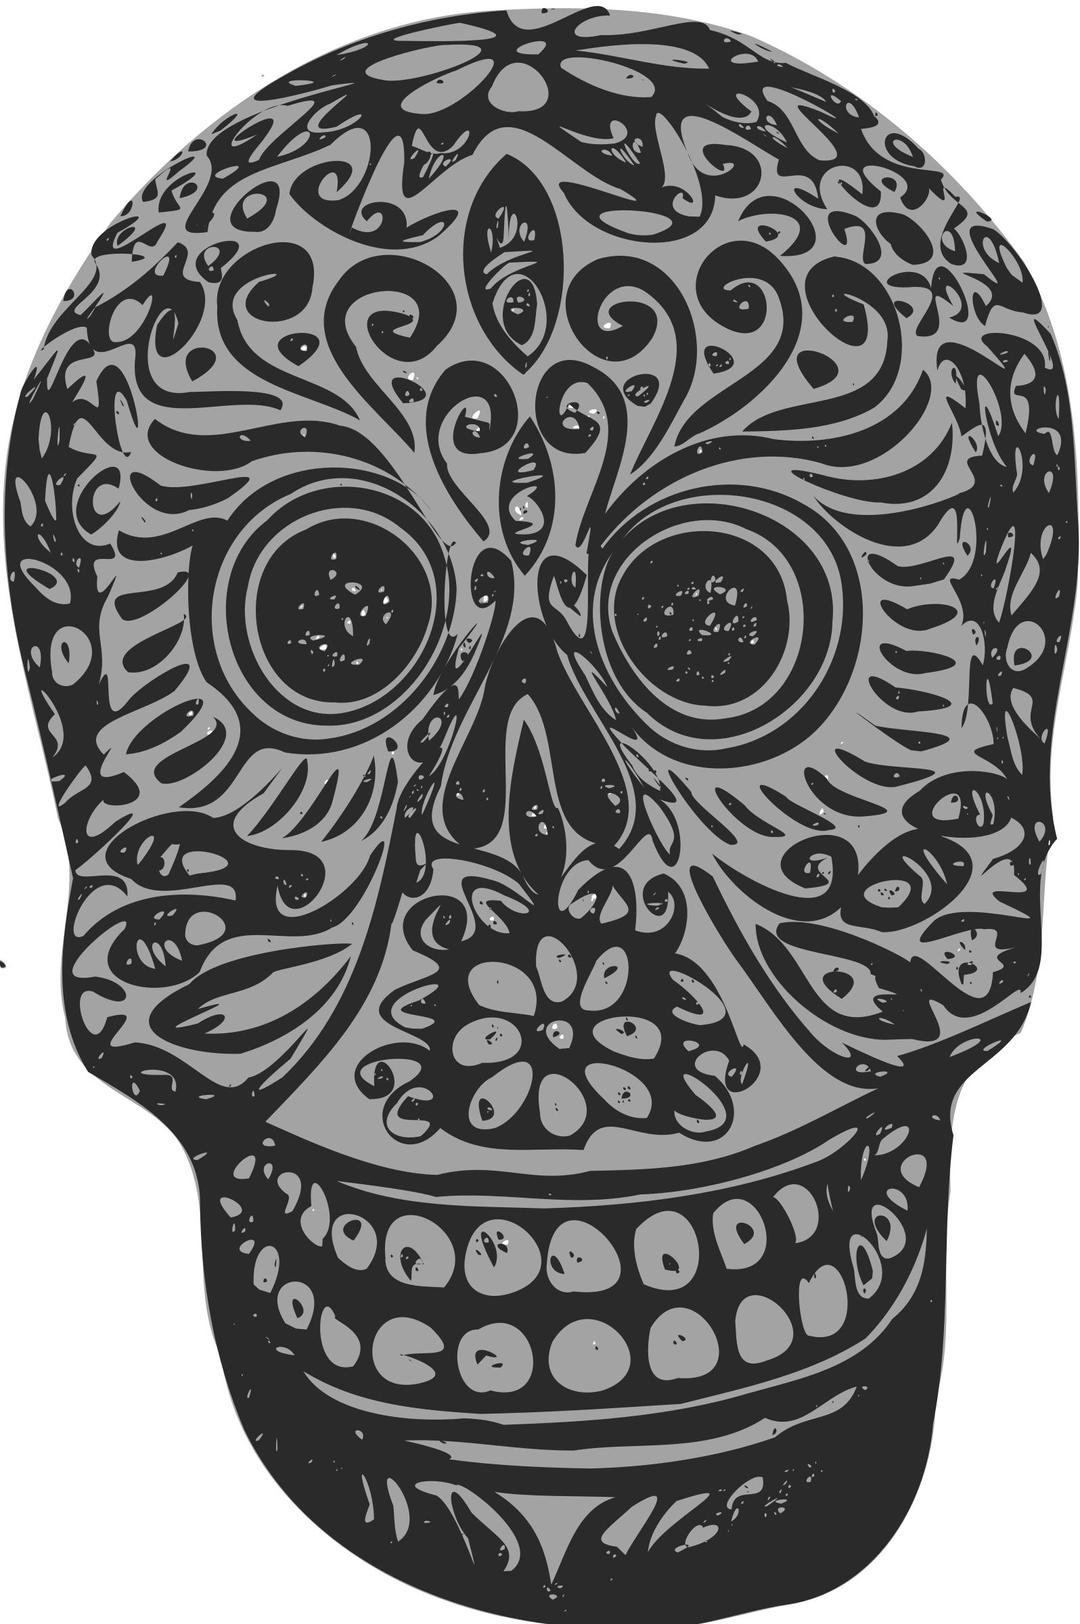 Tatoo skull png transparent